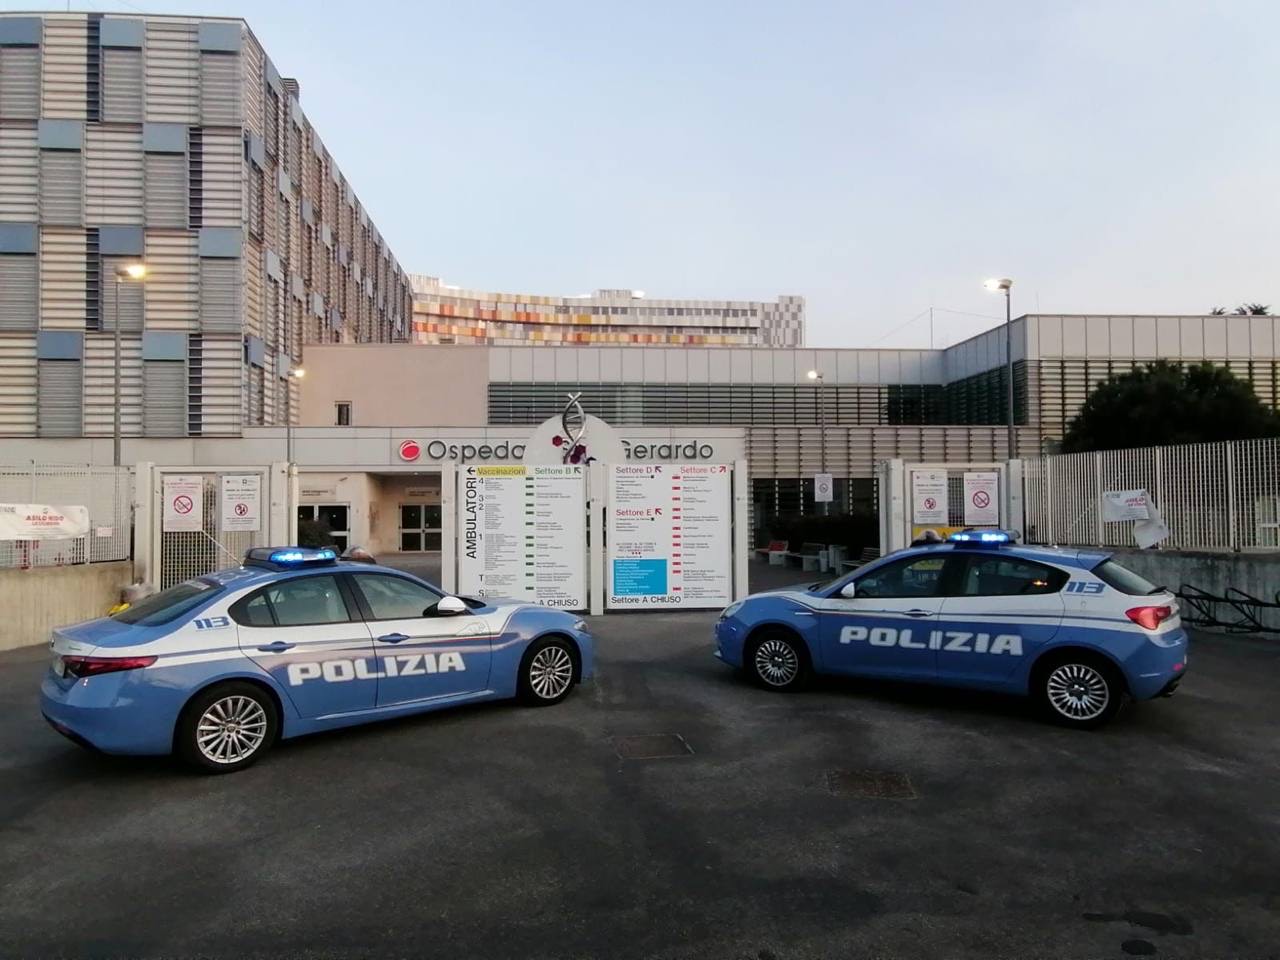 La Polizia interviene presso l'Ospedale San Gerardo di Monza